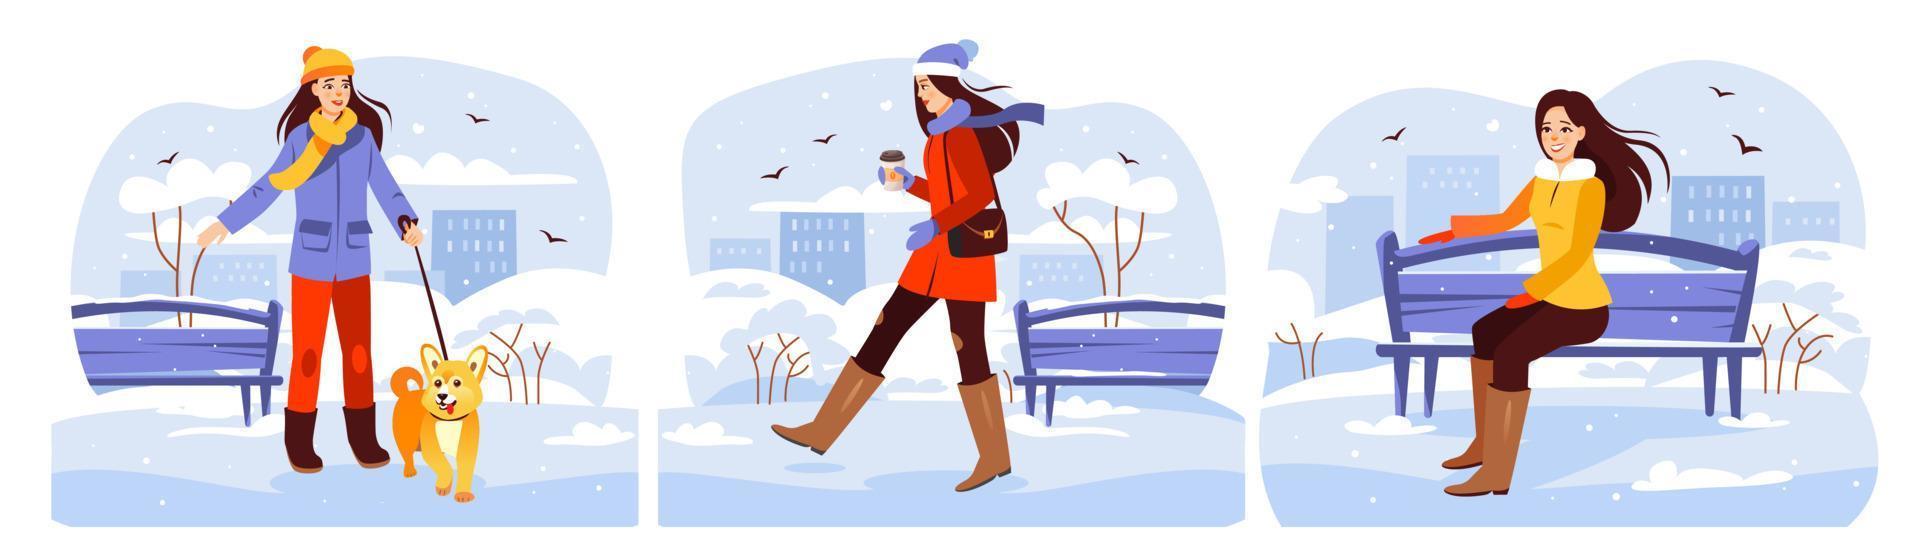 parque de inverno. um conjunto de meninas andando no parque no inverno. a garota bebe café, passeia com o cachorro, sentada em um banco. ilustração vetorial de desenho animado vetor